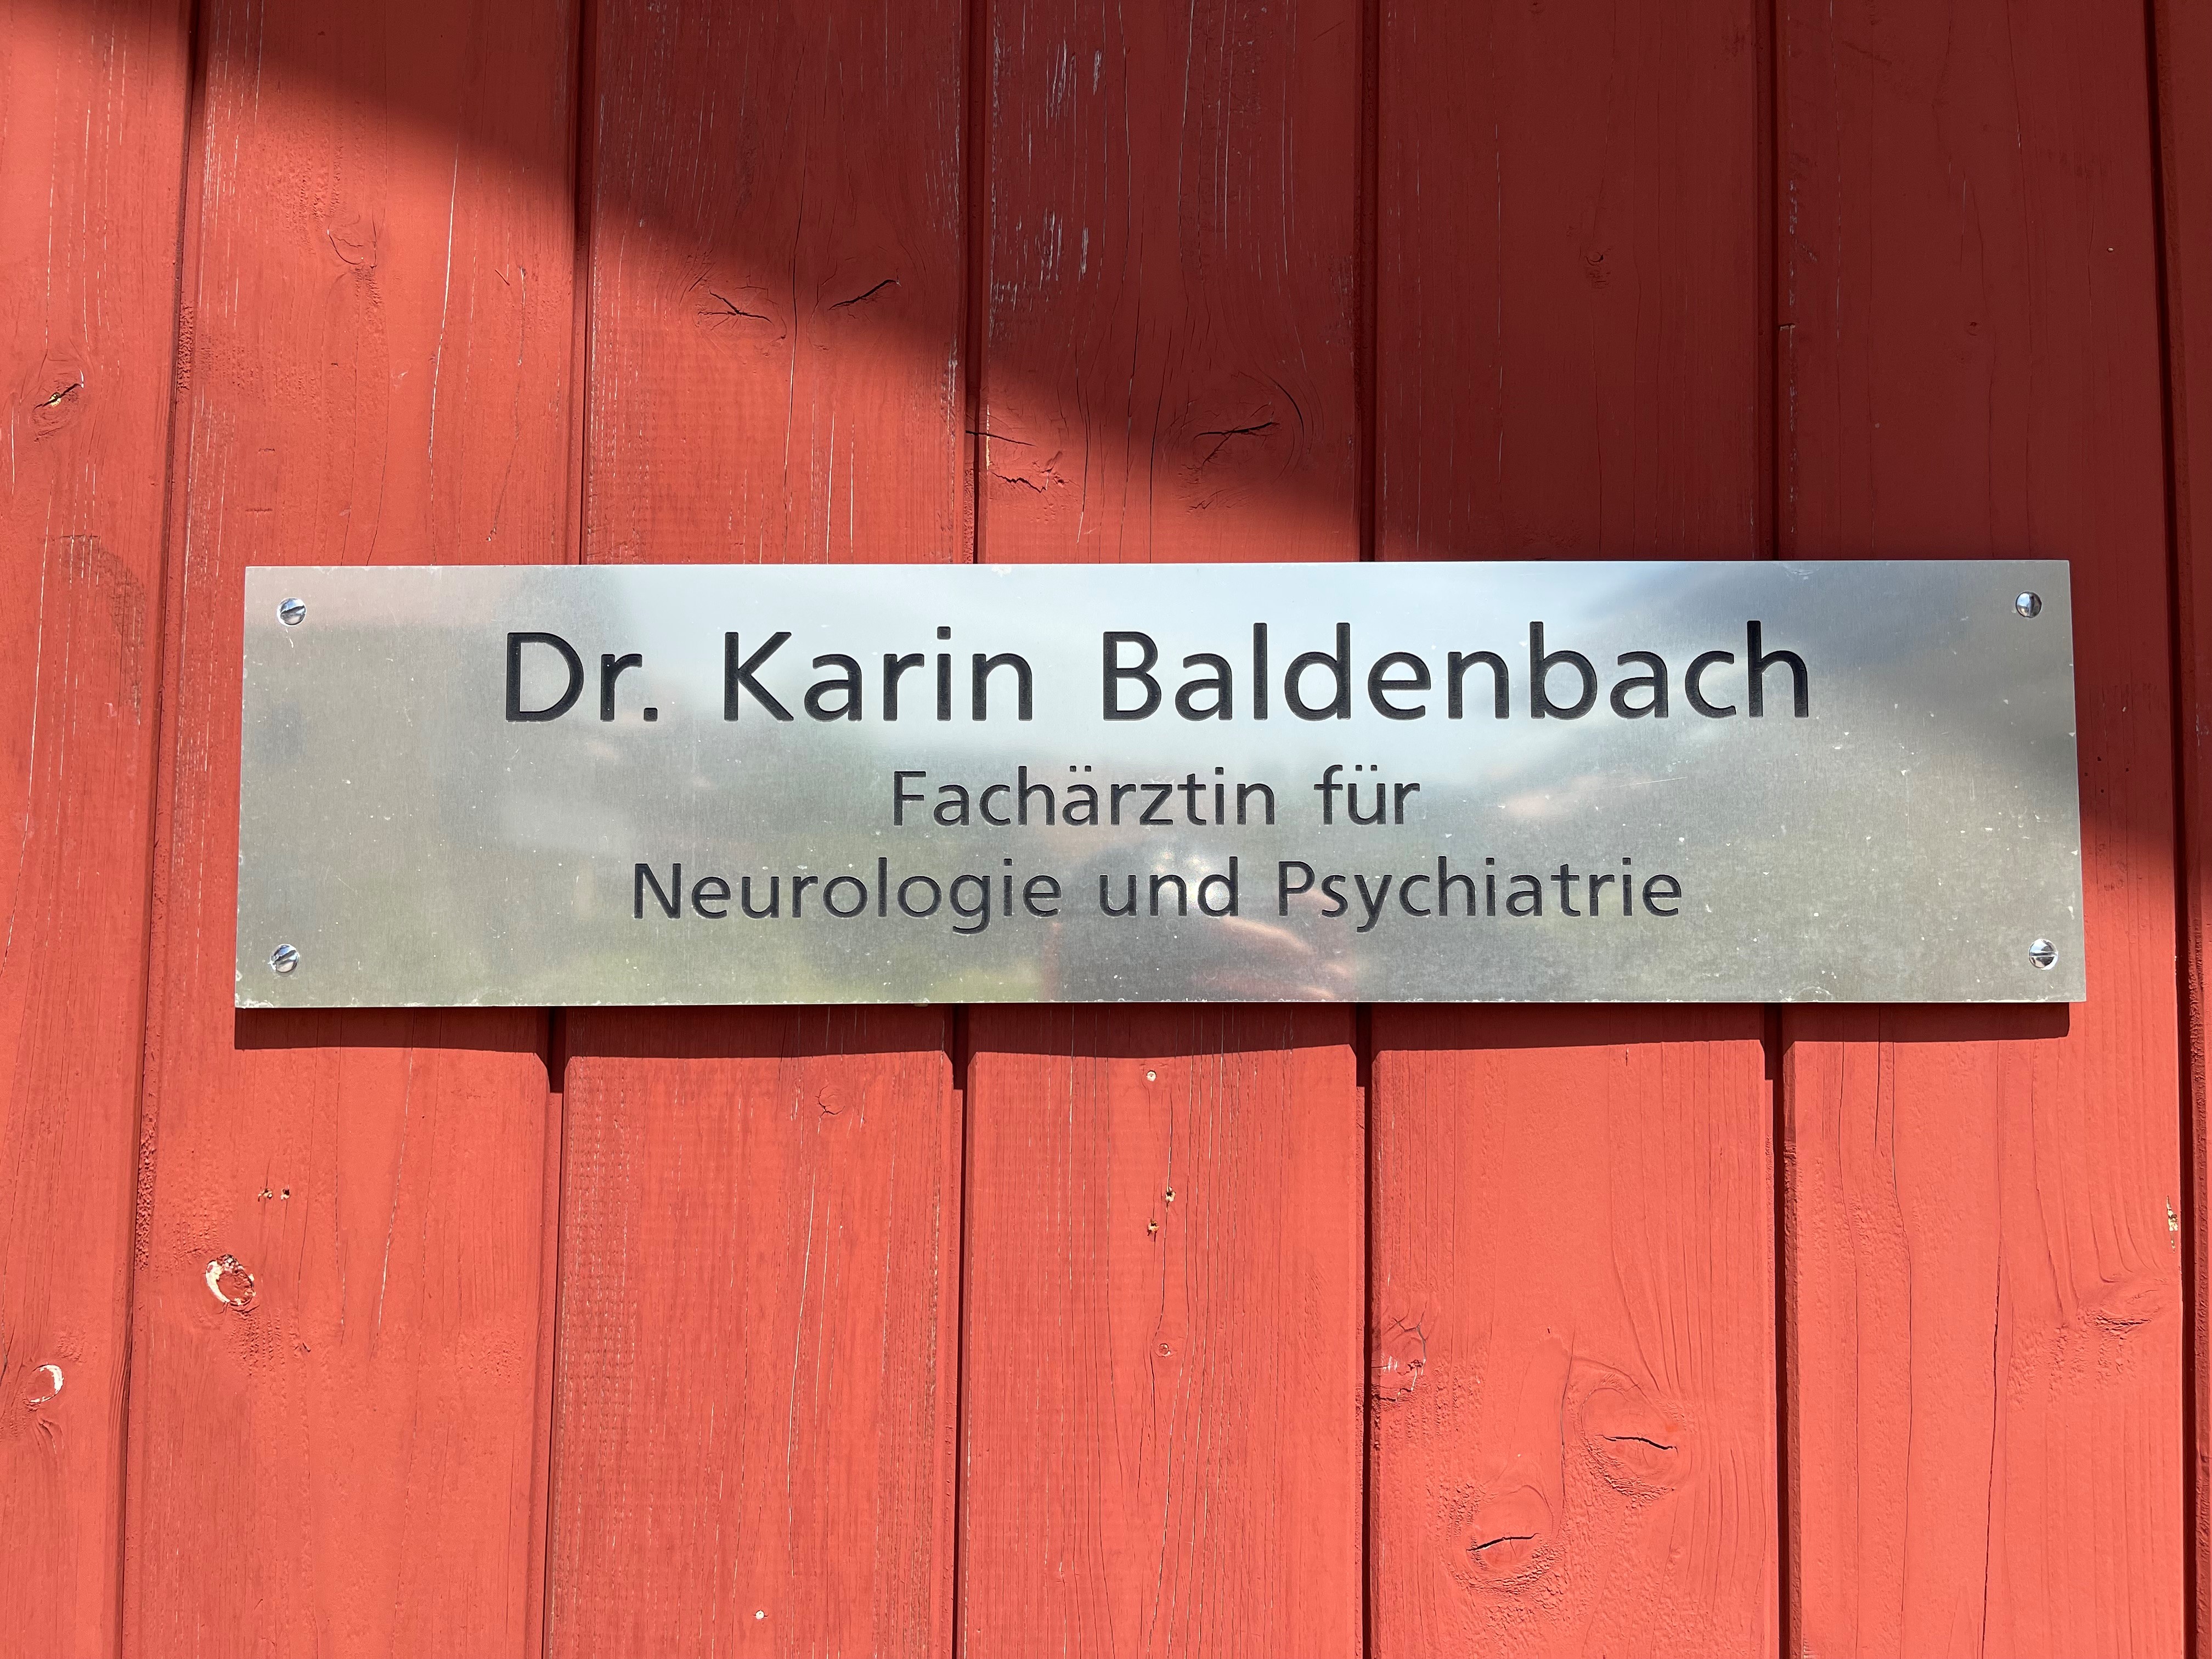 Dr. Karin Baldenbach